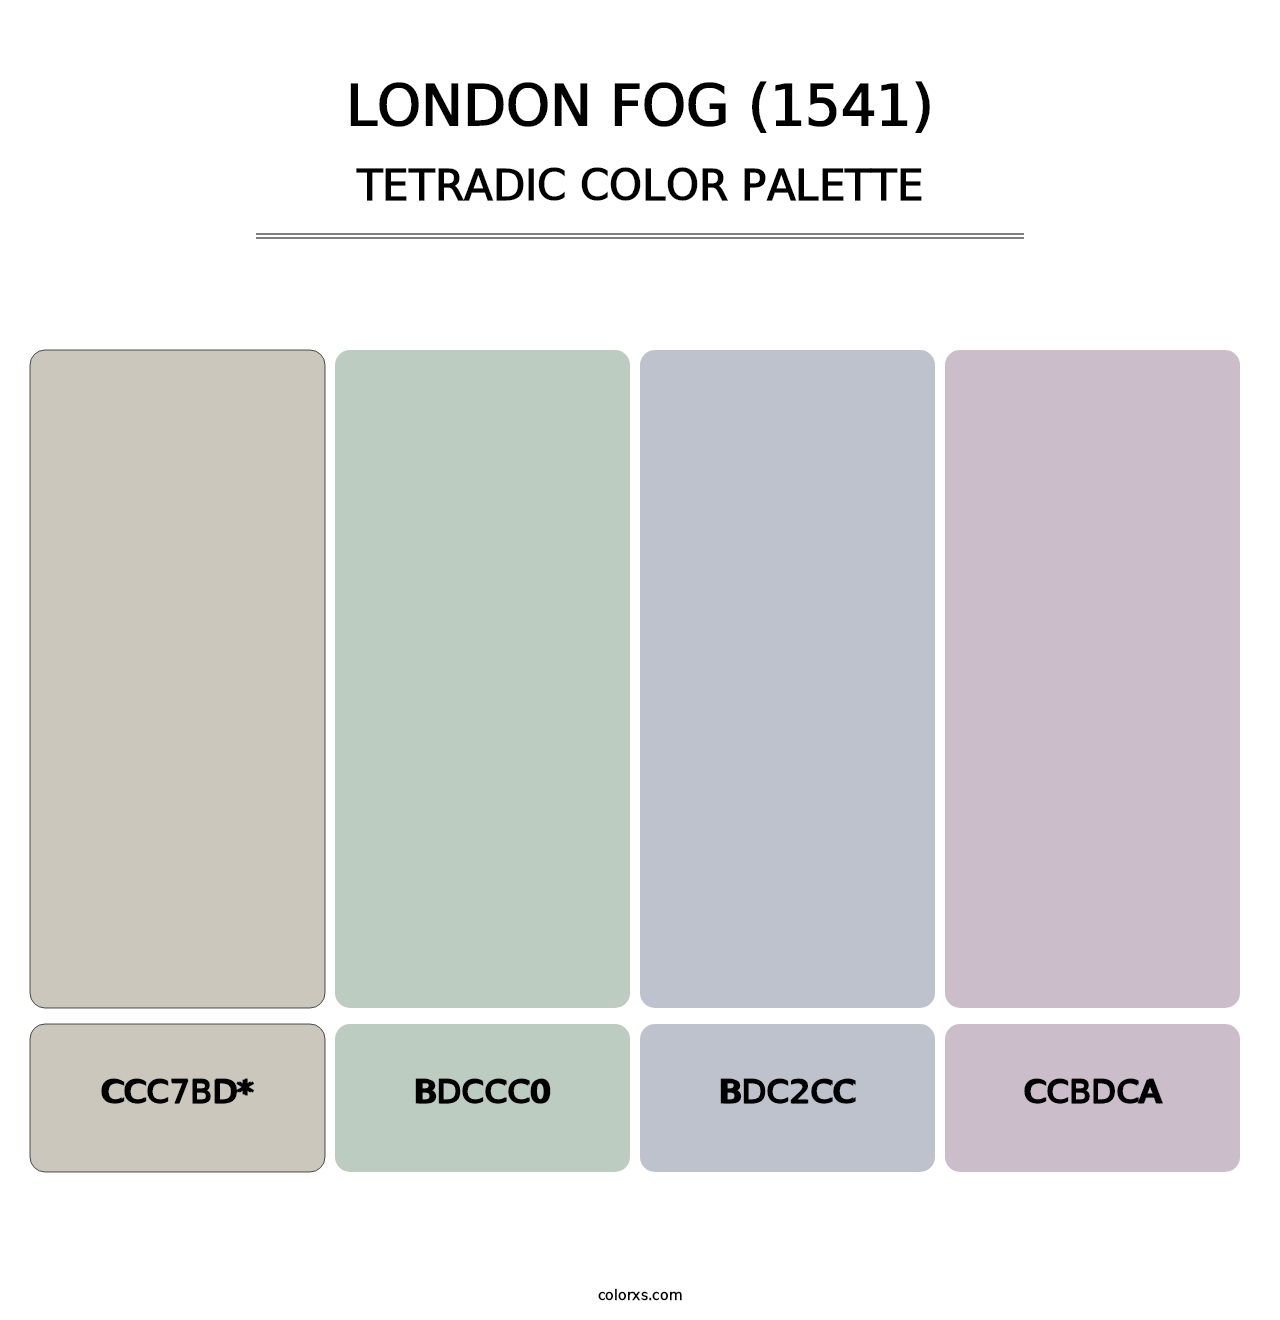 London Fog (1541) - Tetradic Color Palette